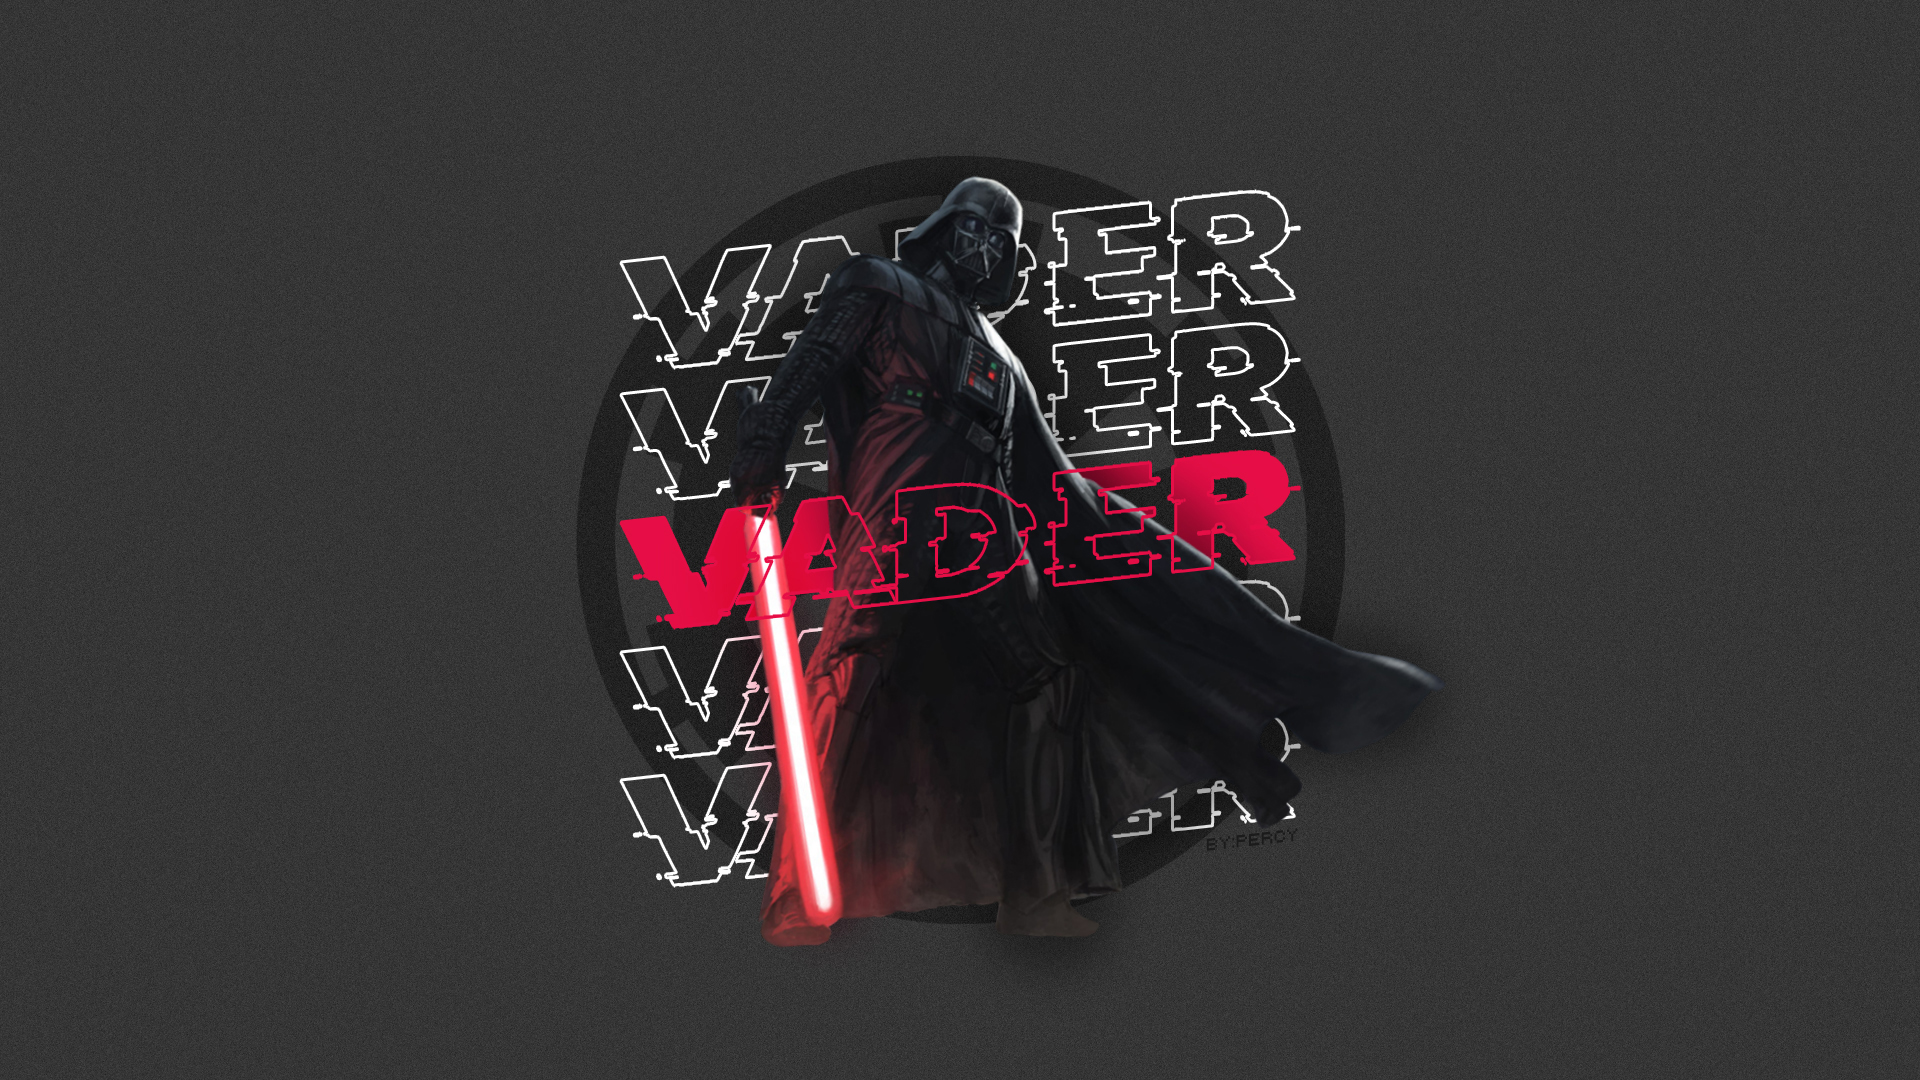 Darth Vader Star Wars Galactic Empire Darth Vader Star Wars Lightsaber 1920x1080